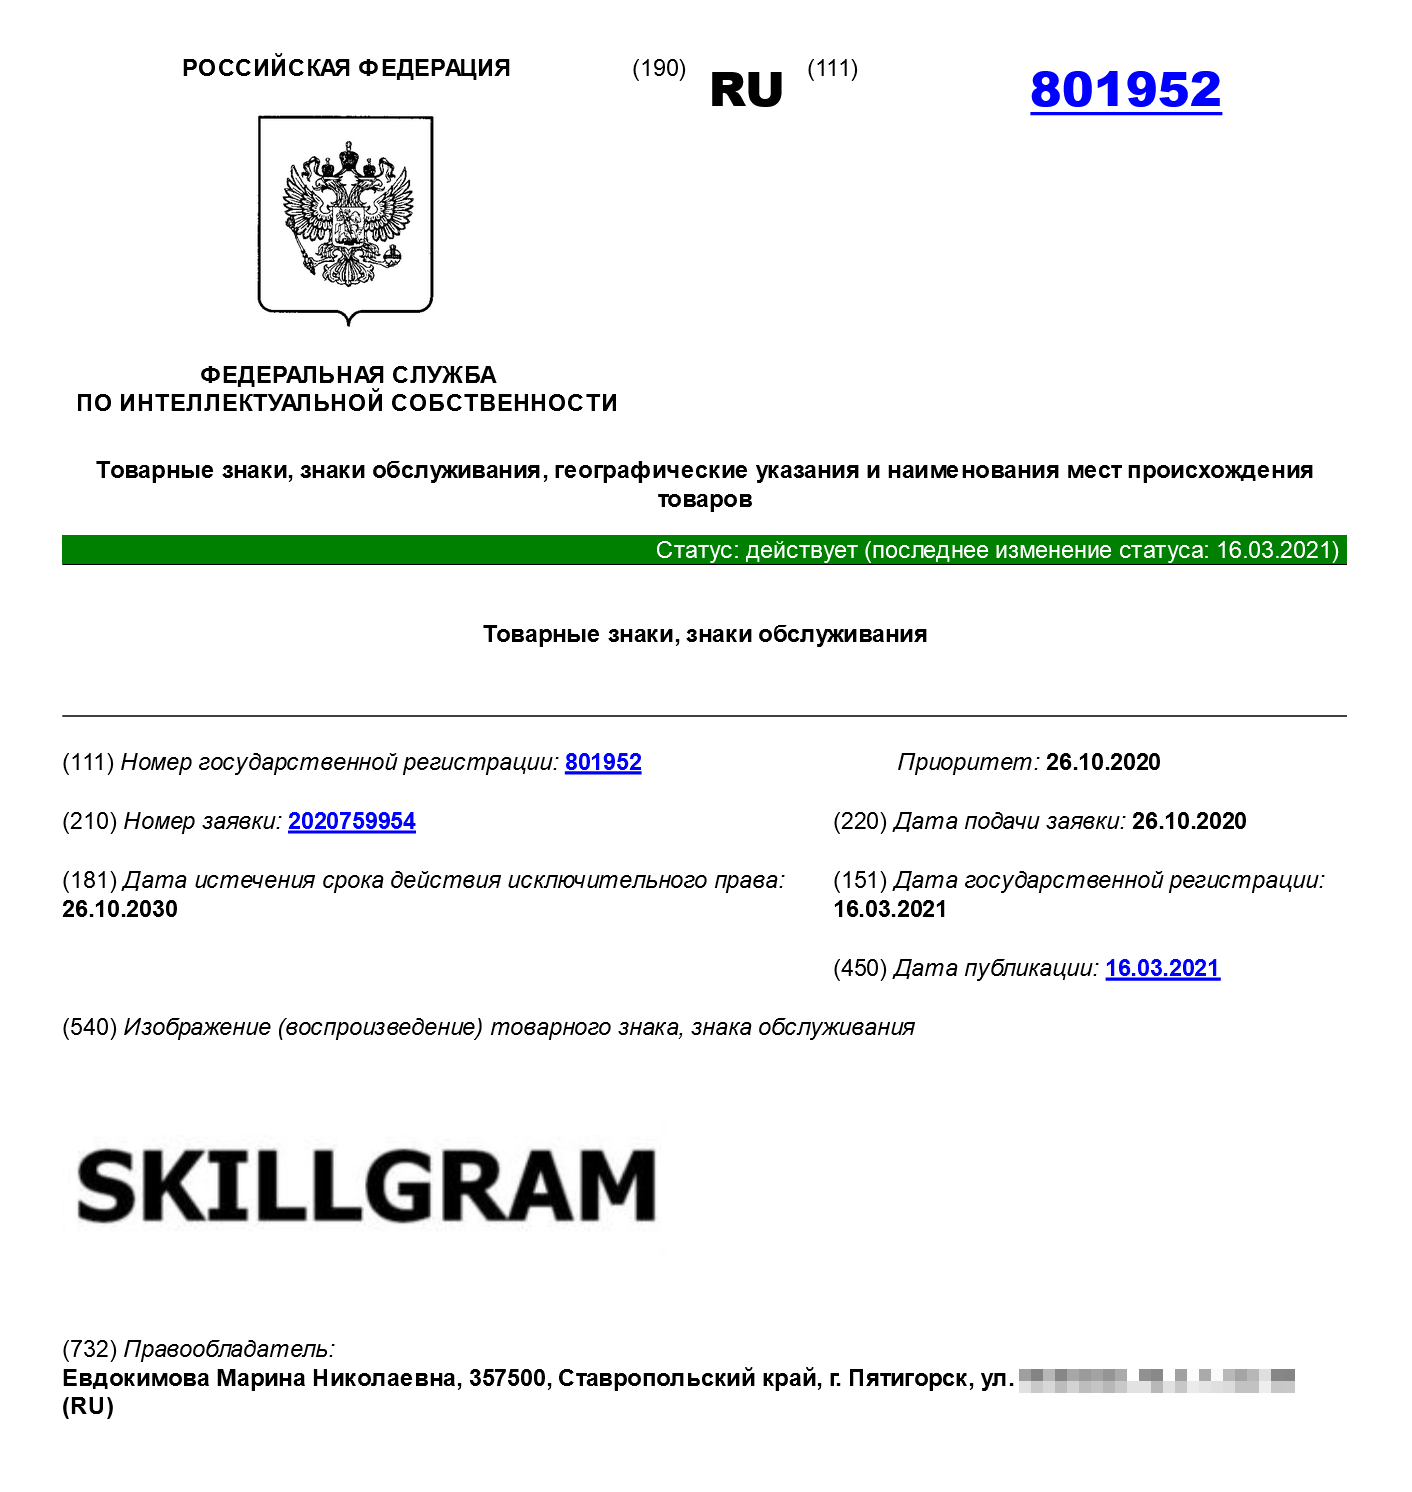 Товарный знак школы английского языка Skillgram прошел регистрацию, вся процедура заняла четыре месяца